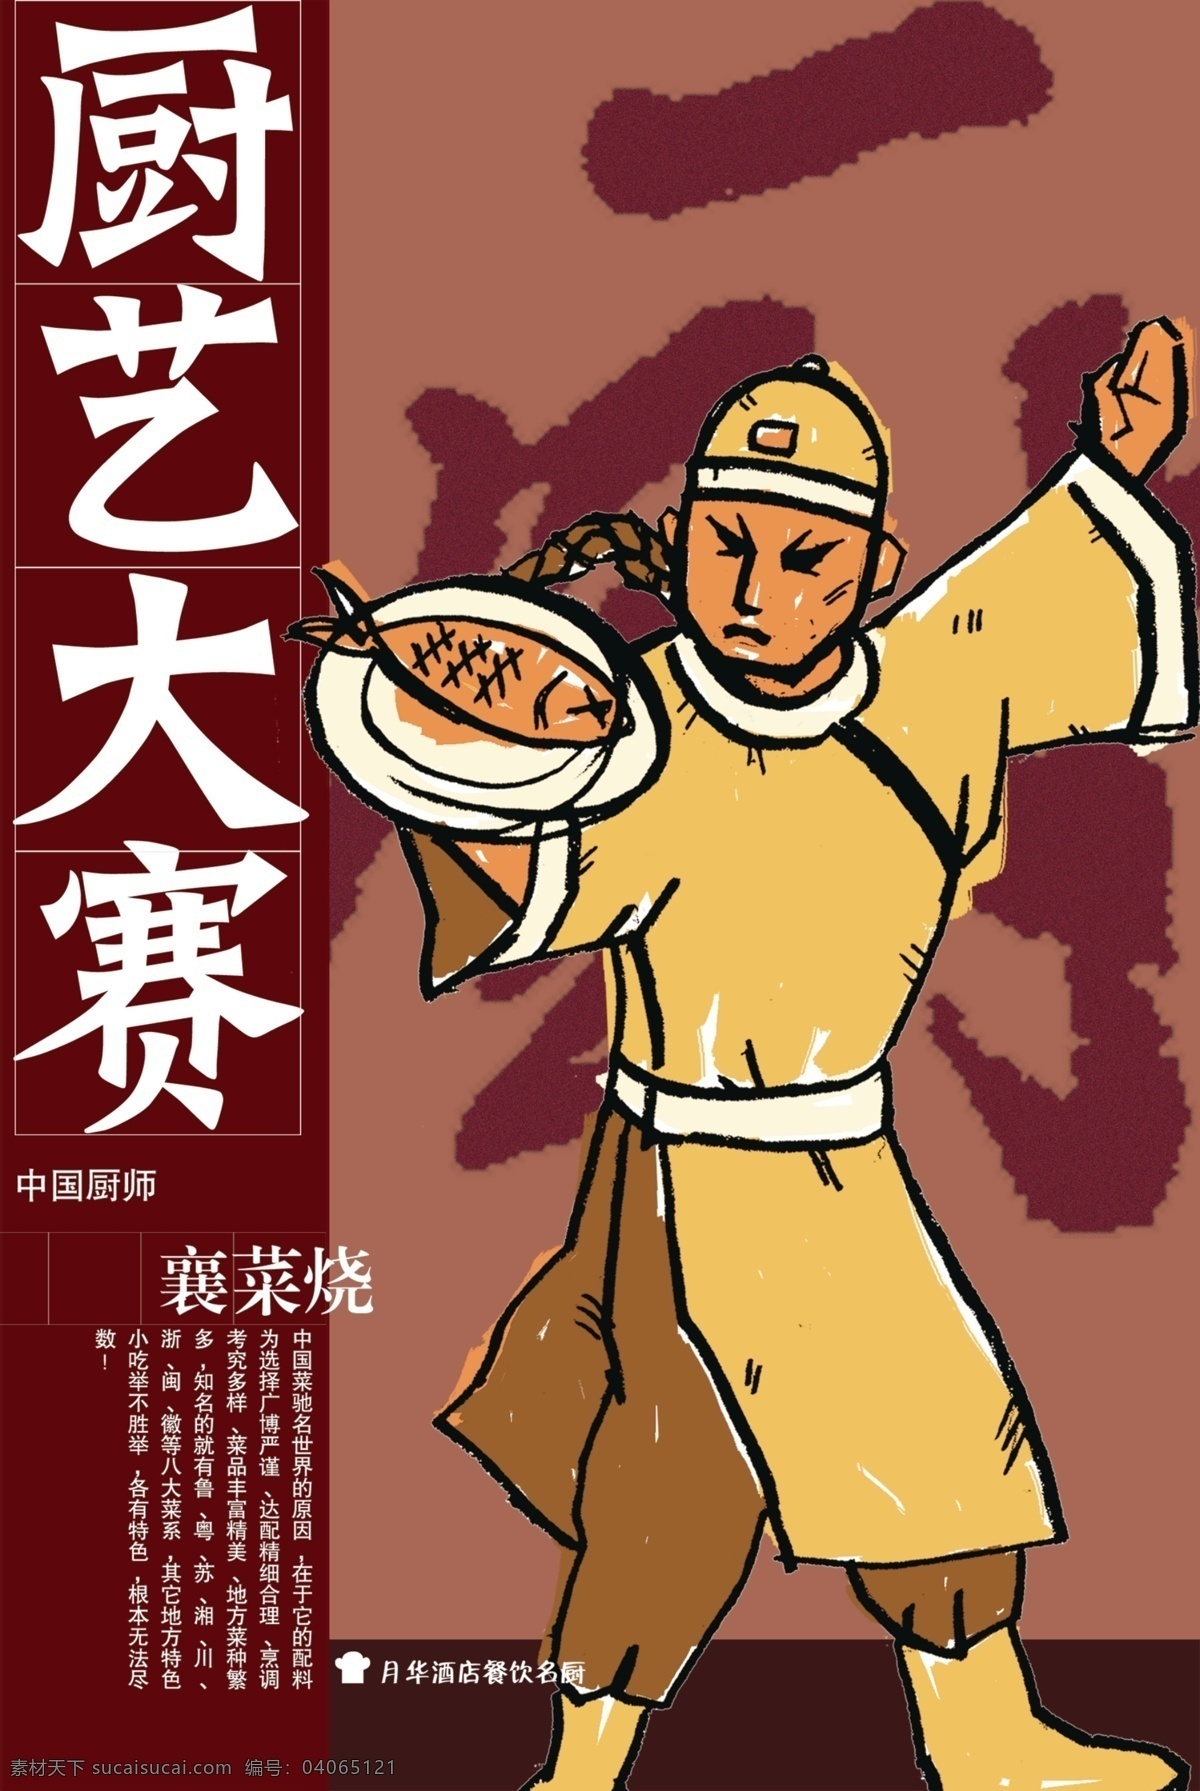 厨艺 比赛 厨房 厨师 大厨 美食 美味 设计海报 鱼 中国功夫 厨艺比赛 美厨 其他海报设计